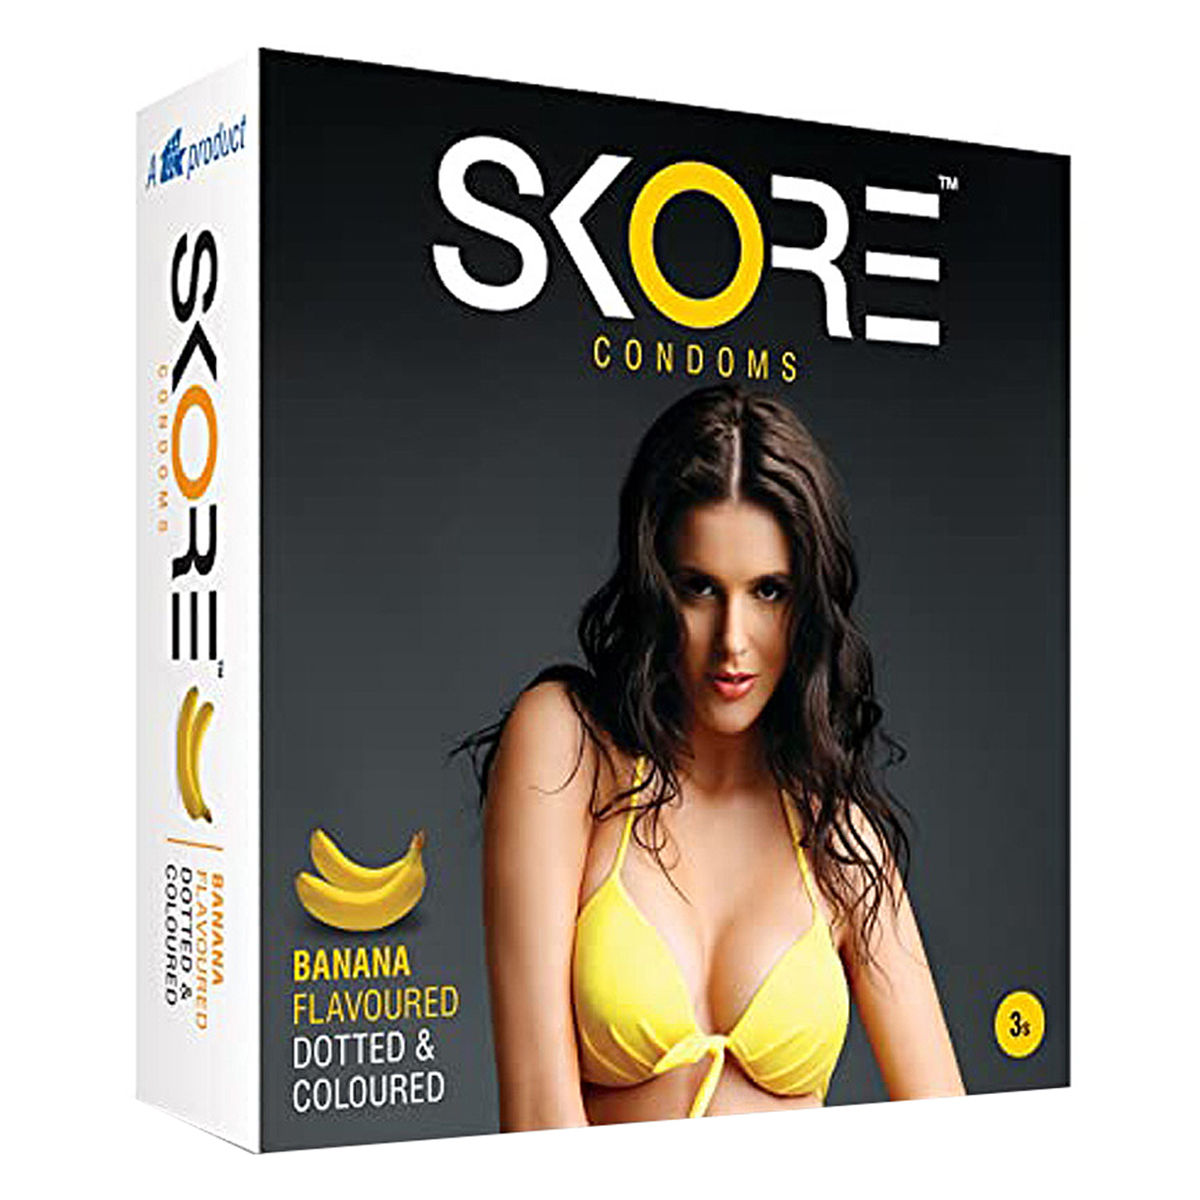 Buy Skore Banana Flavour Condoms, 3 Count Online